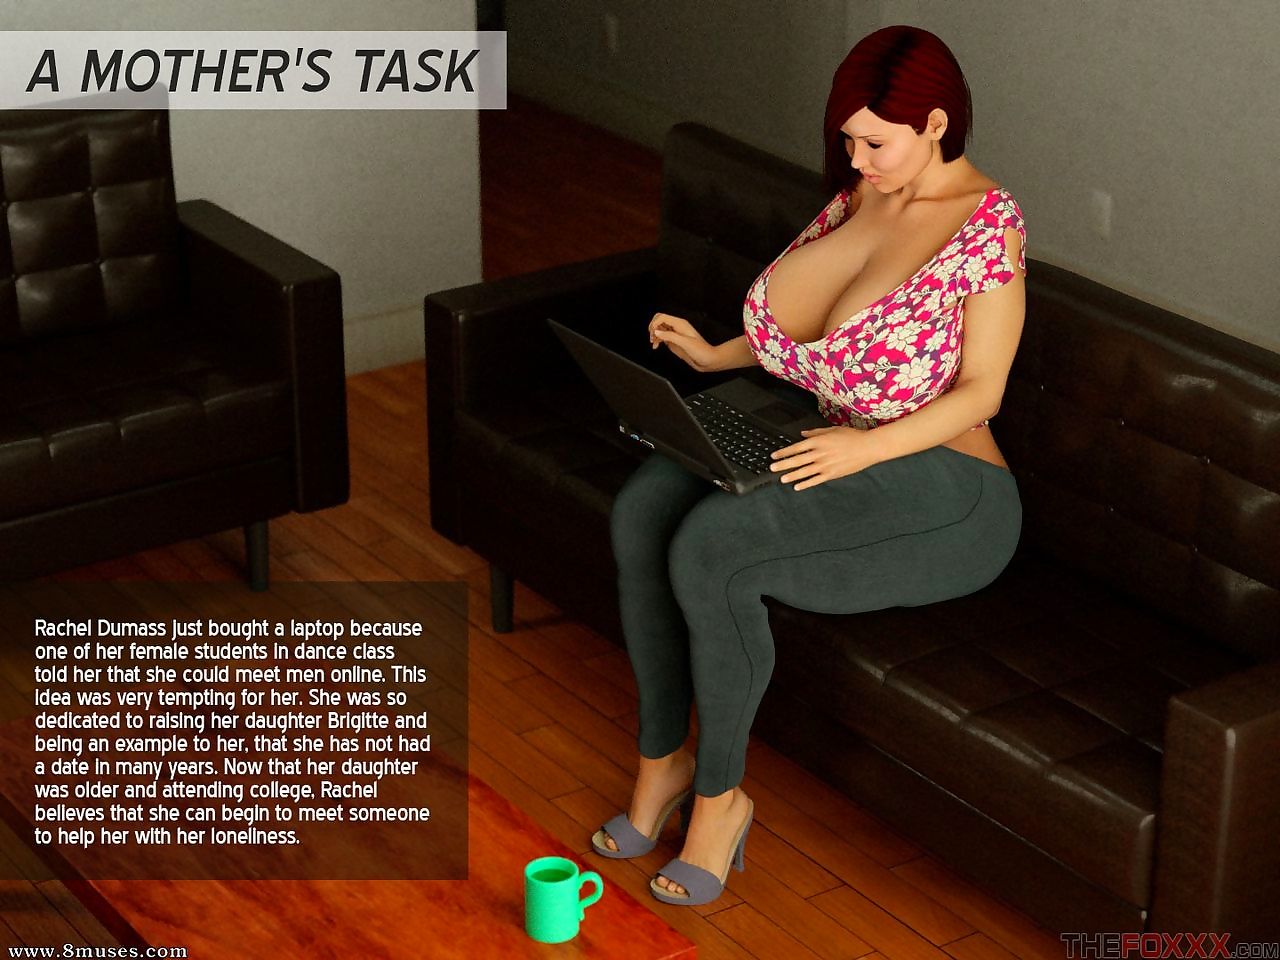 Politur bewerben Foxxx ein Mütter Hausaufgaben Befestigung 3